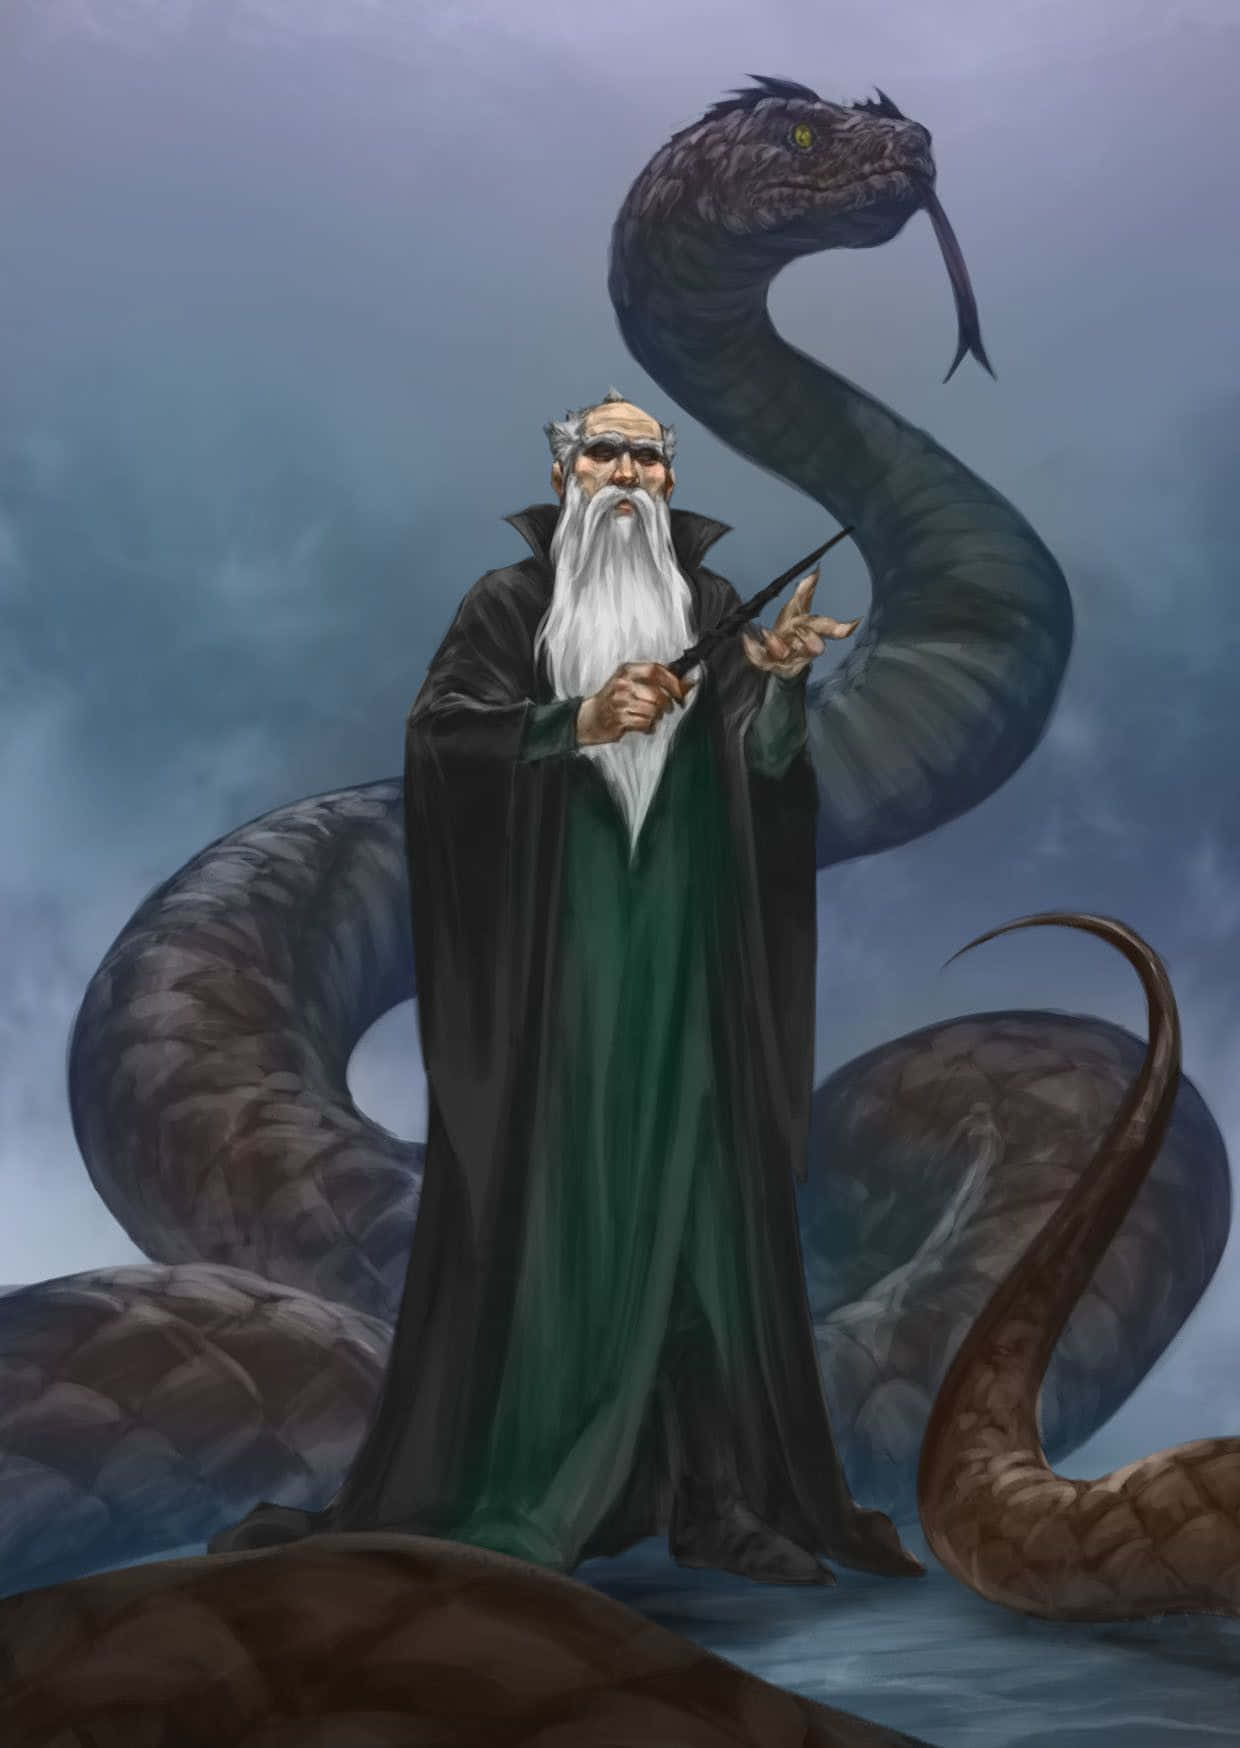 Salazar Slytherin, Co-founder of Hogwarts Wallpaper